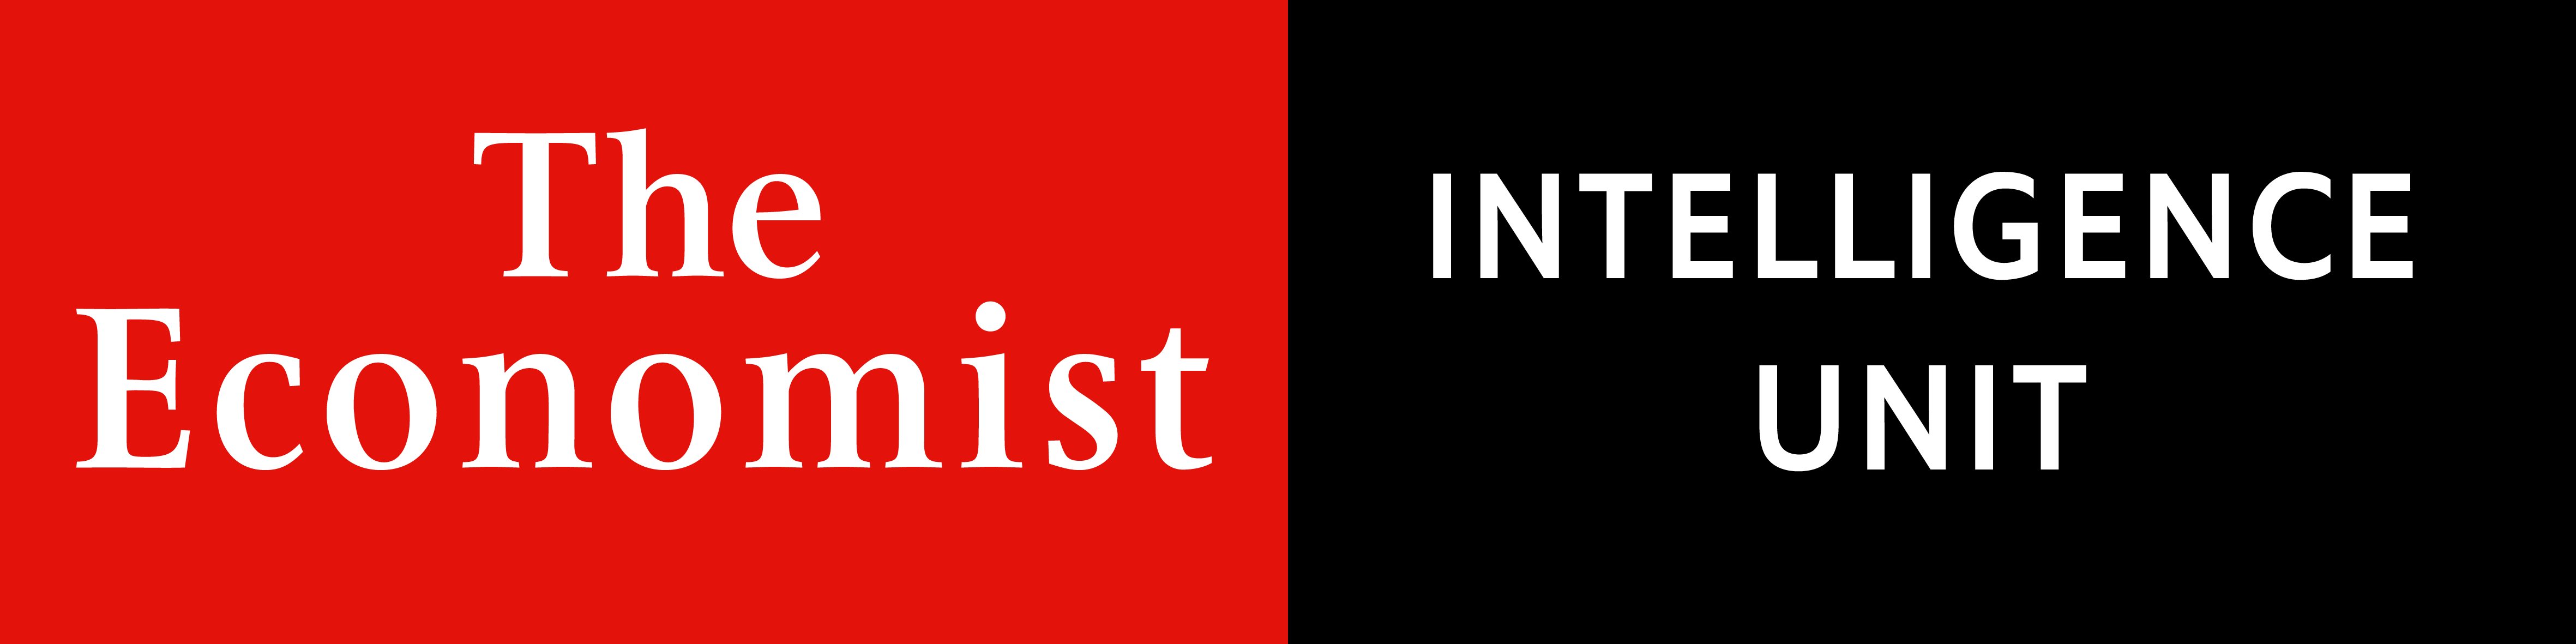 The Economist / Intelligence Unit logo